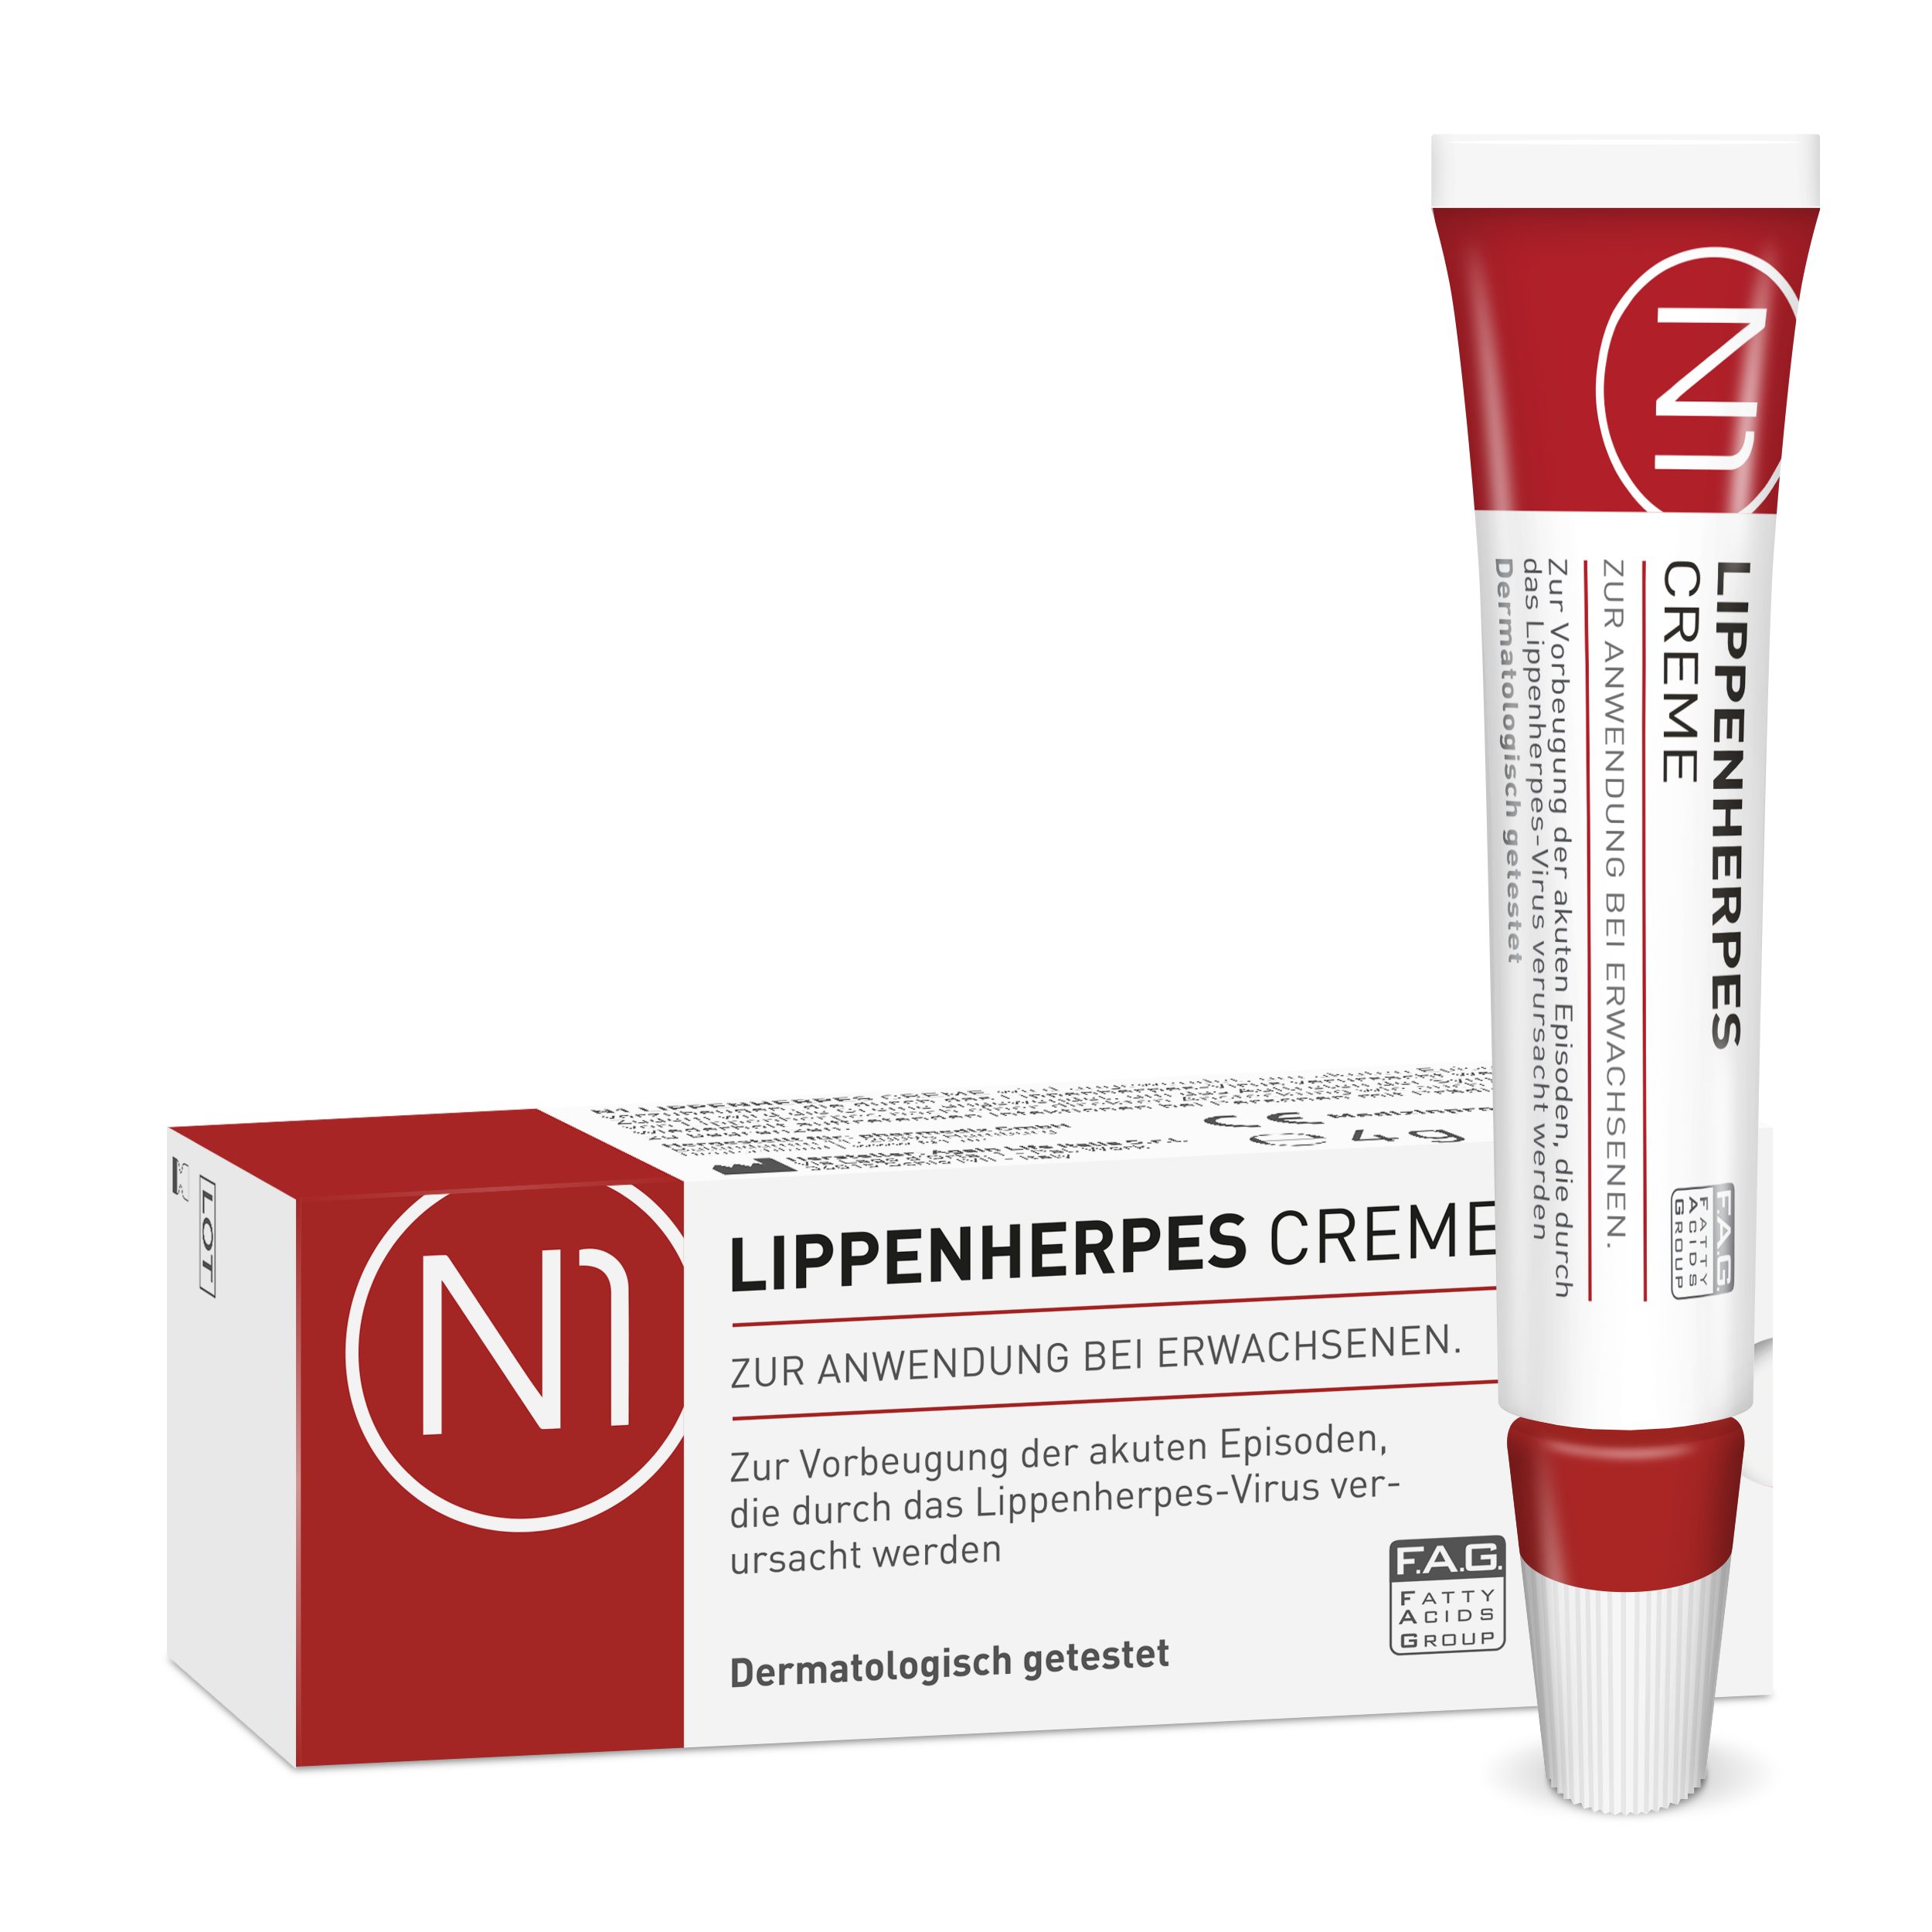 N1 Healthcare Lippencreme Herpes Creme geöffnet 6 haltbar sofort, bei patentiert, Lippenherpes, Monate wirkt